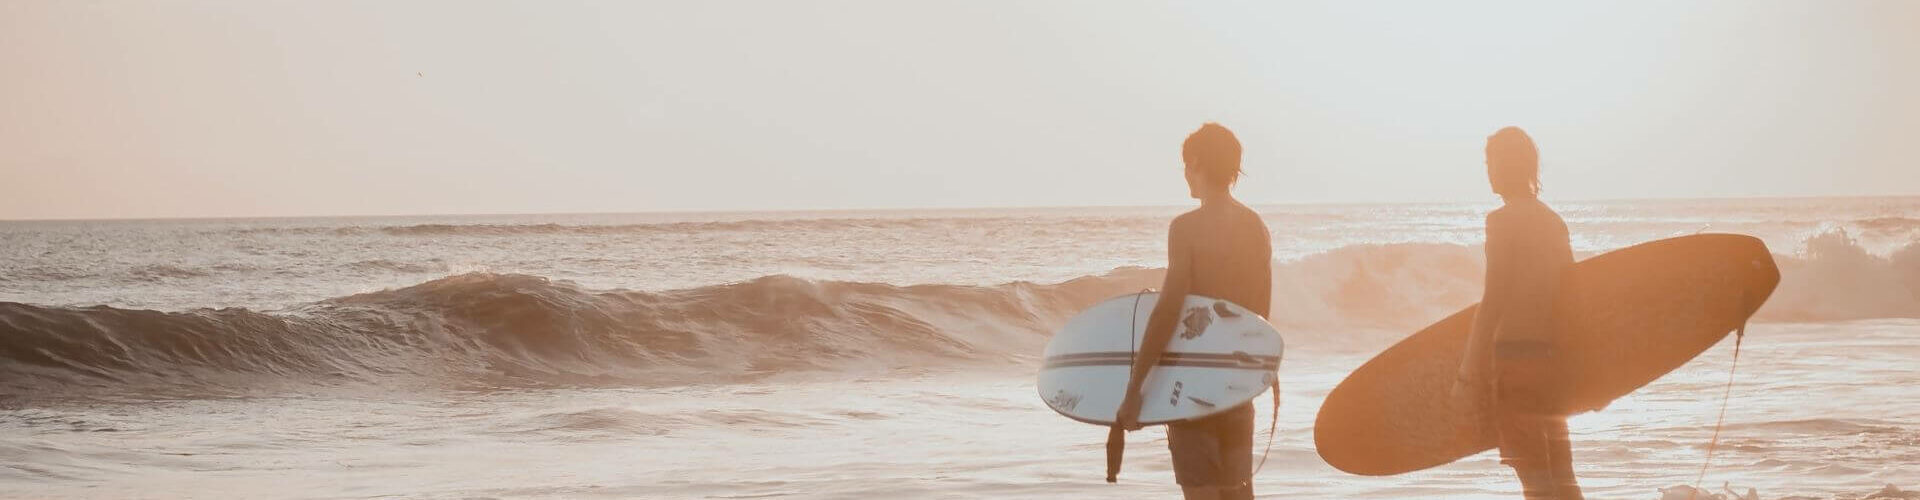 Die beste Zeit zum Surfen auf Bali